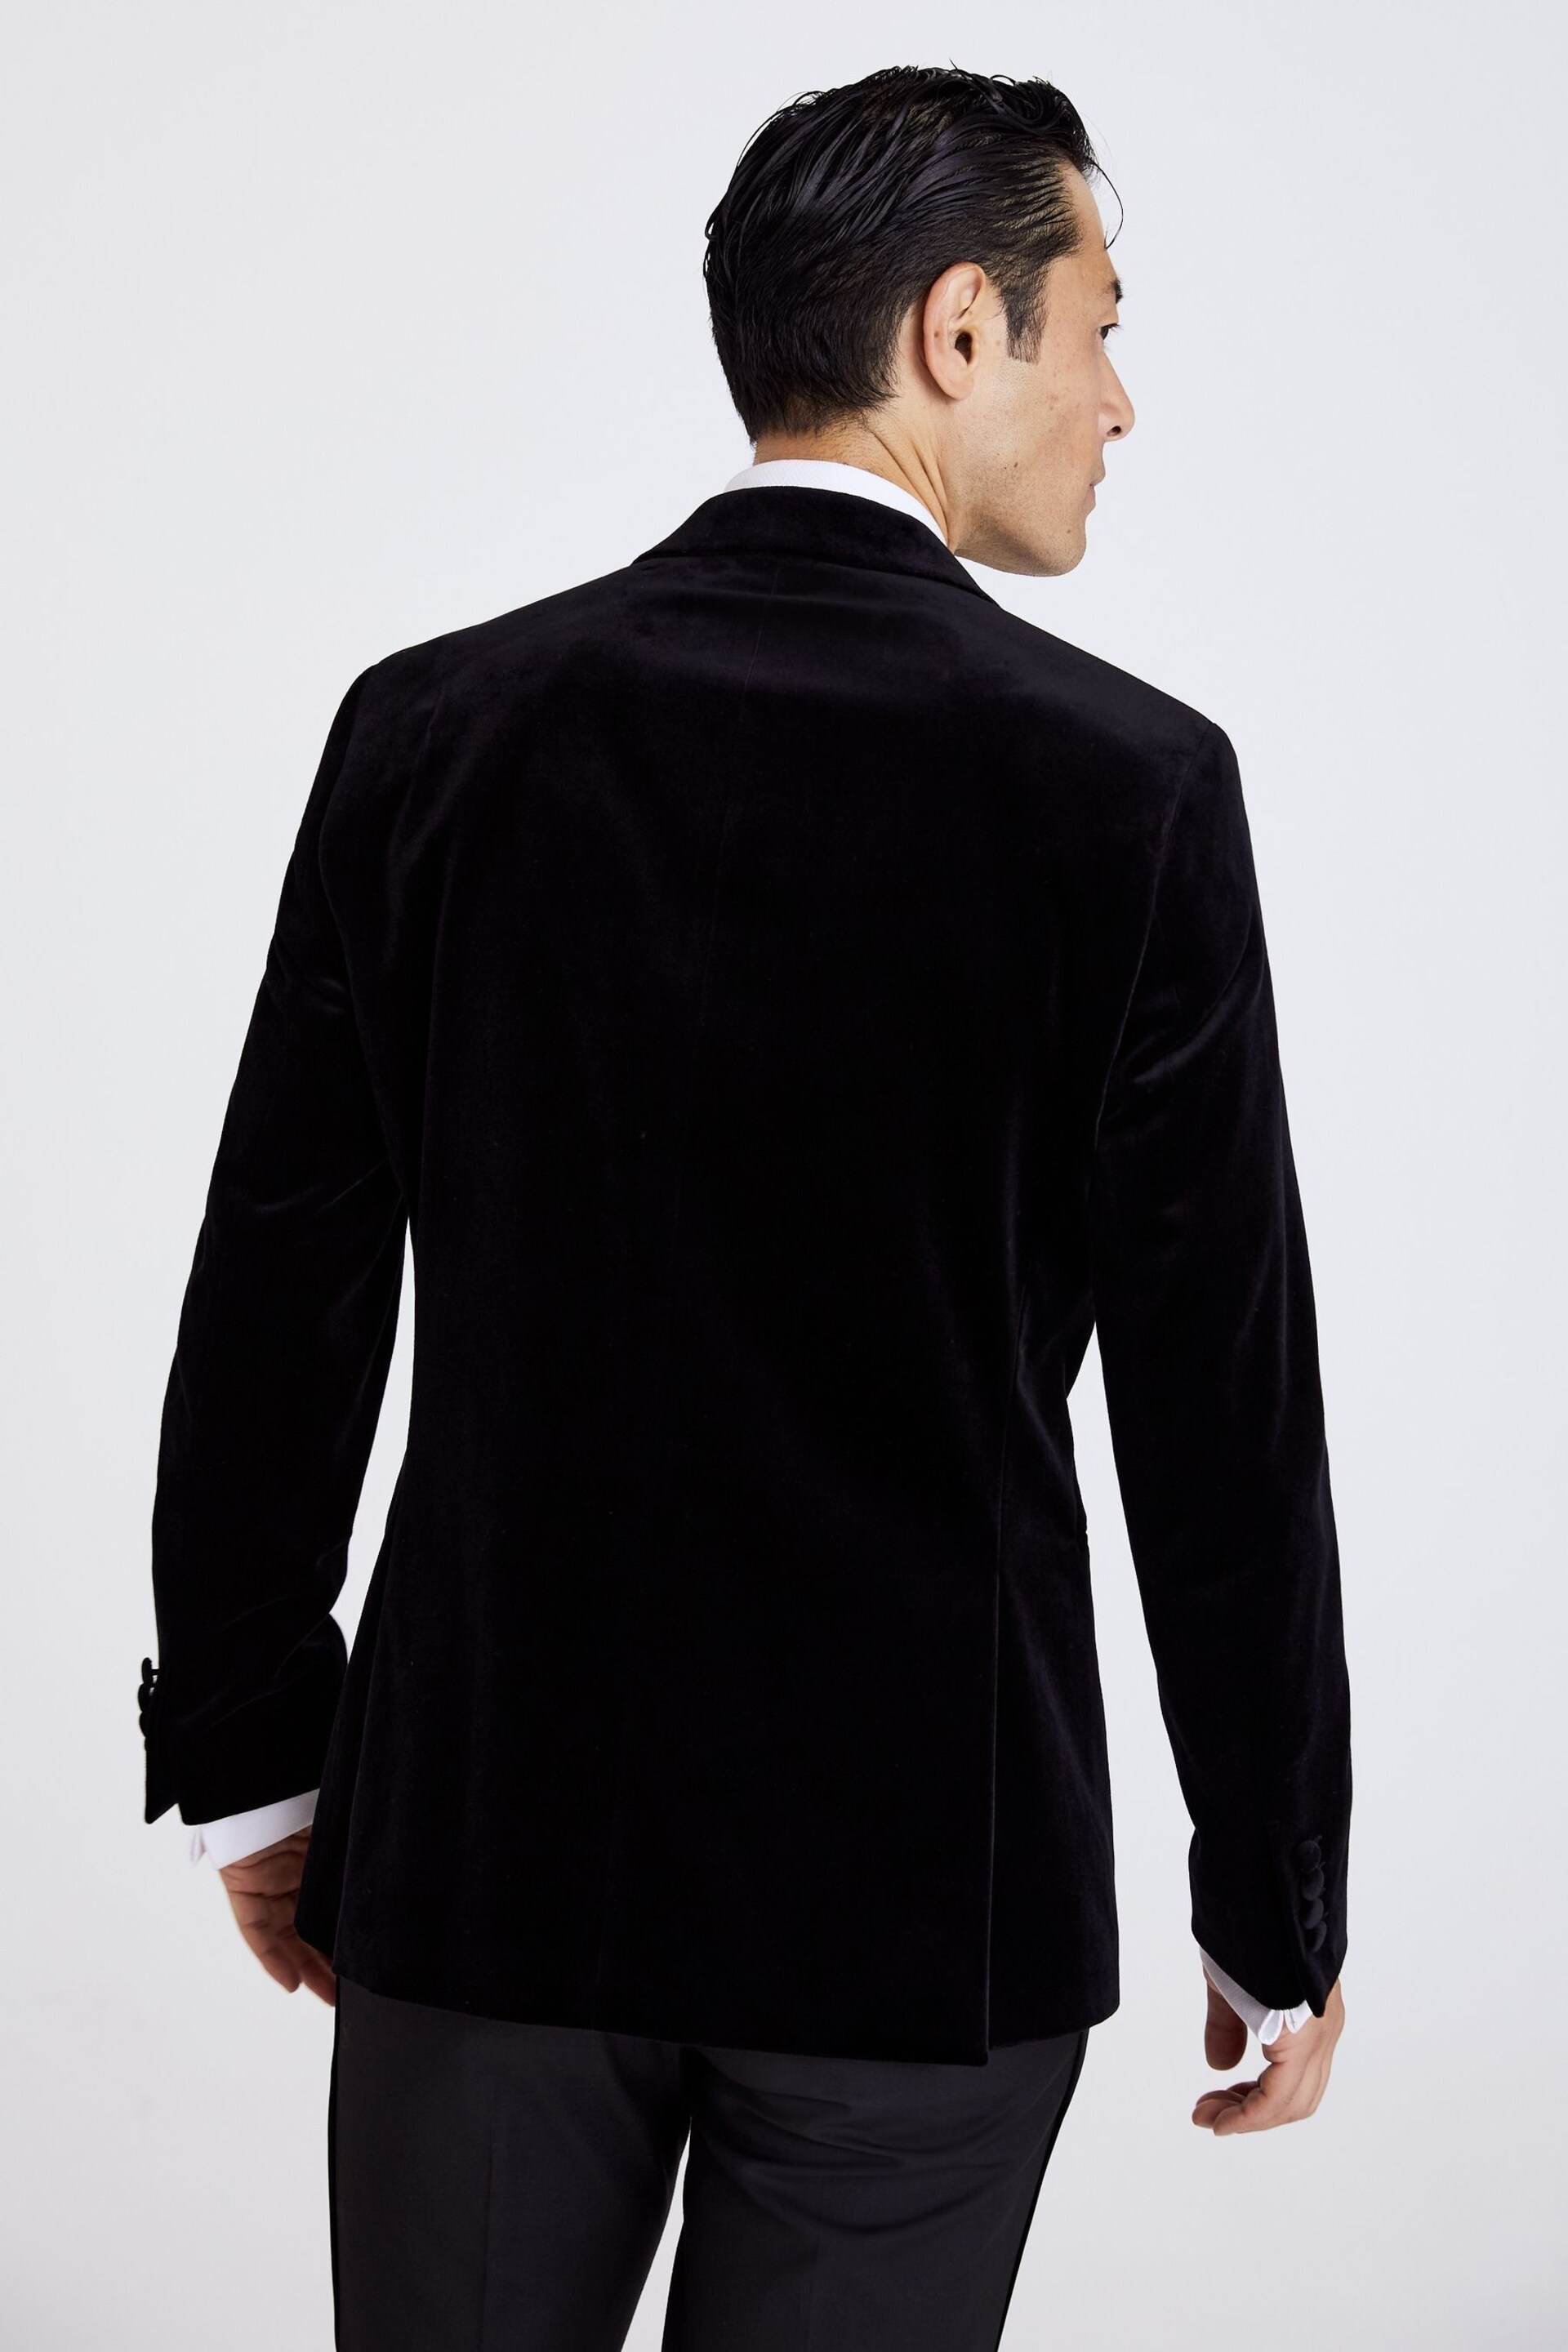 MOSS Regular Fit Velvet Black Jacket - Image 4 of 5